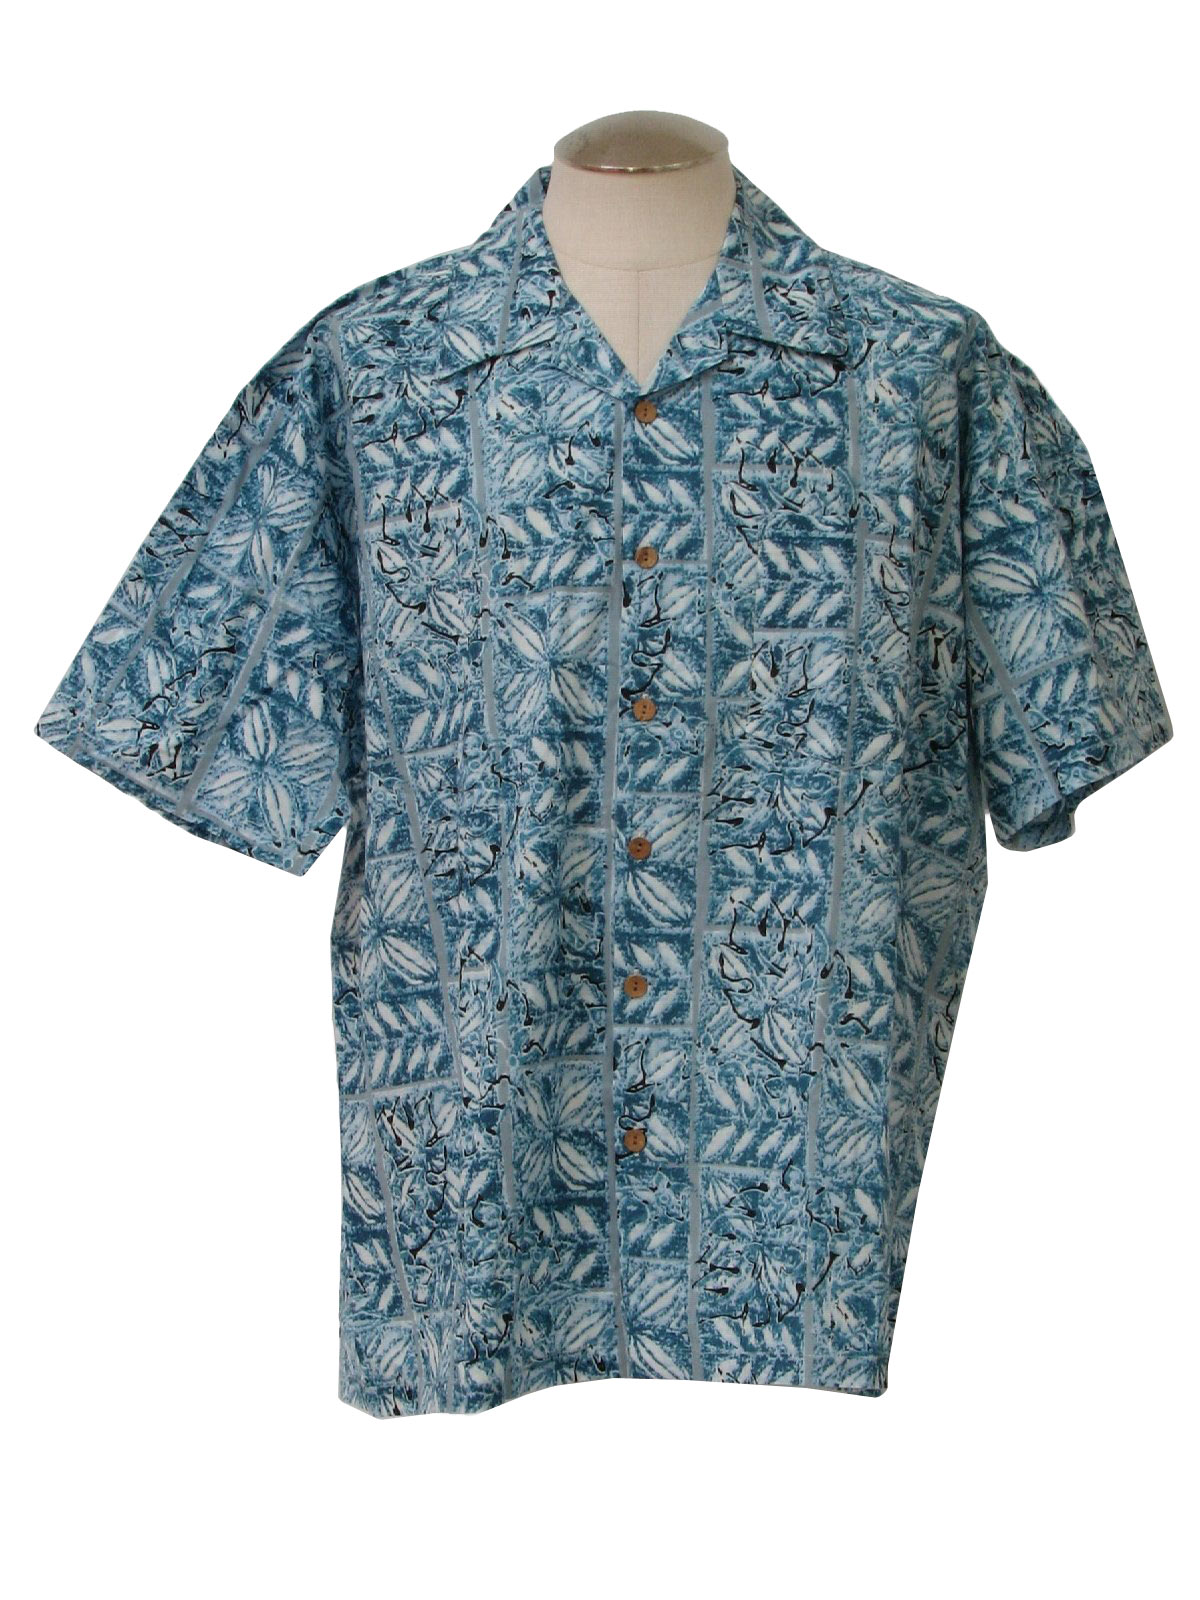 Retro Nineties Hawaiian Shirt: 90s -Maui Trading Company (by Kennington ...